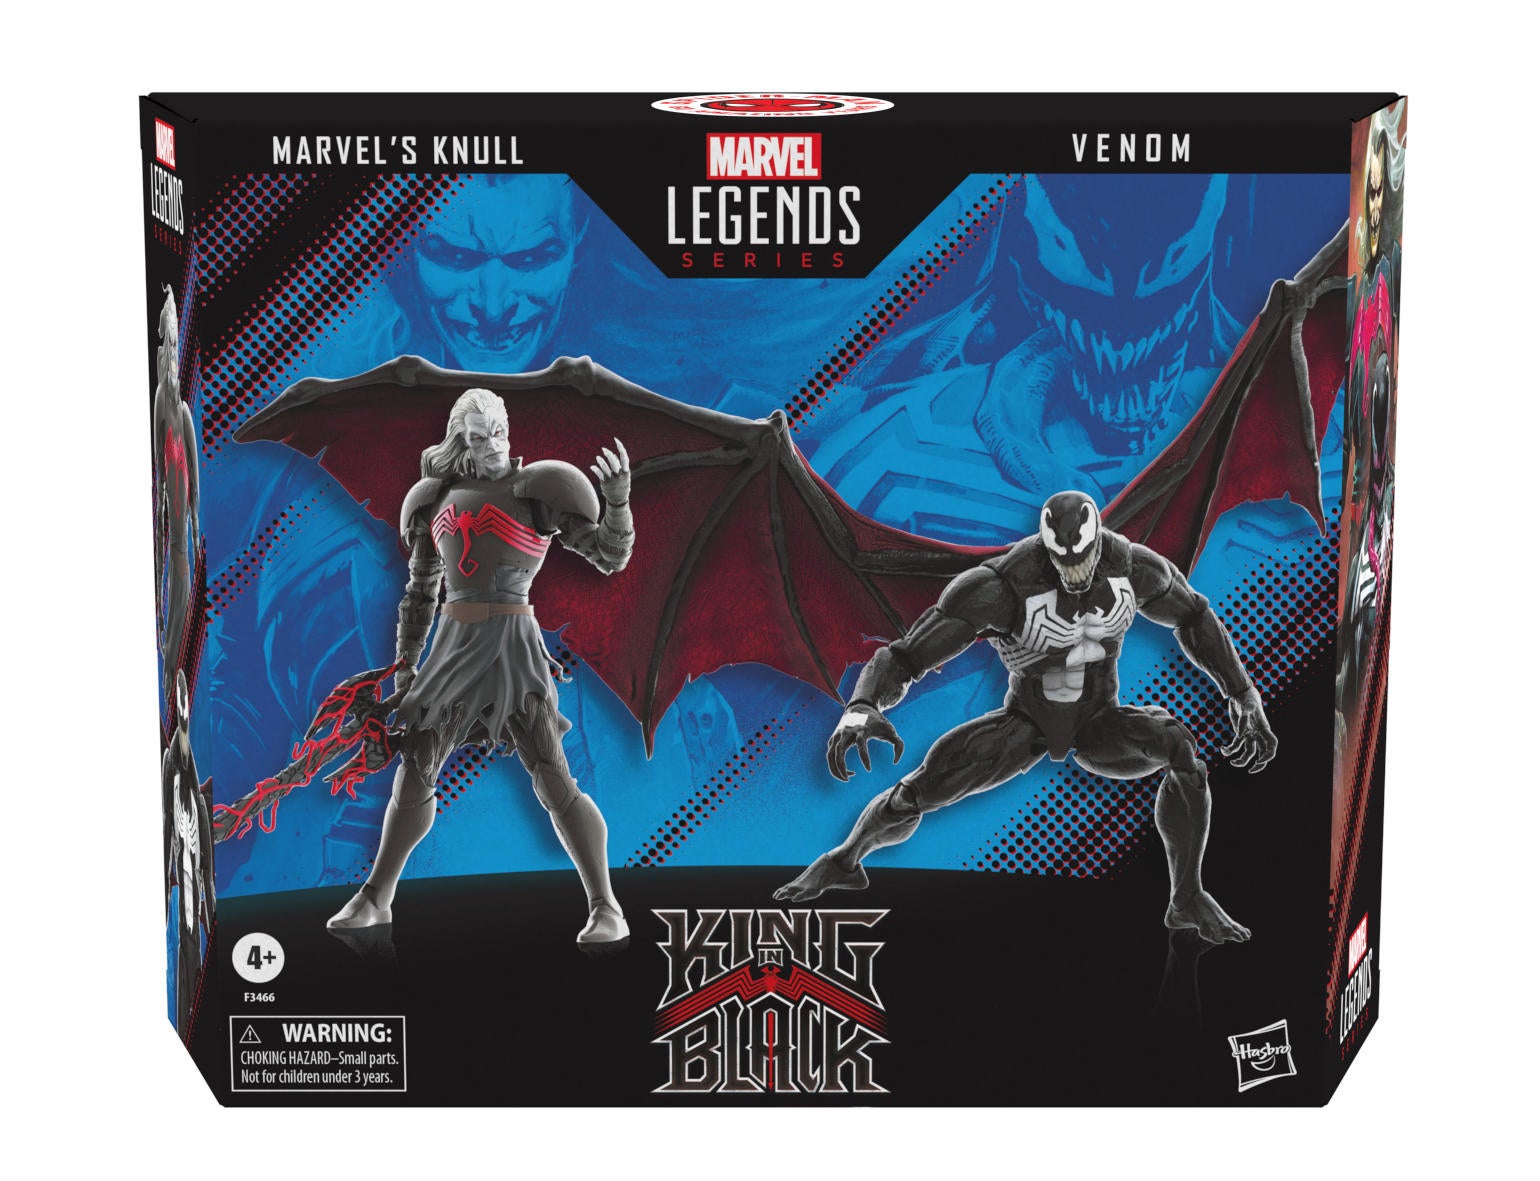 marvel-Legends-series-60-anniv-marvels-knull-and-venom-2-pack-image-2.jpg